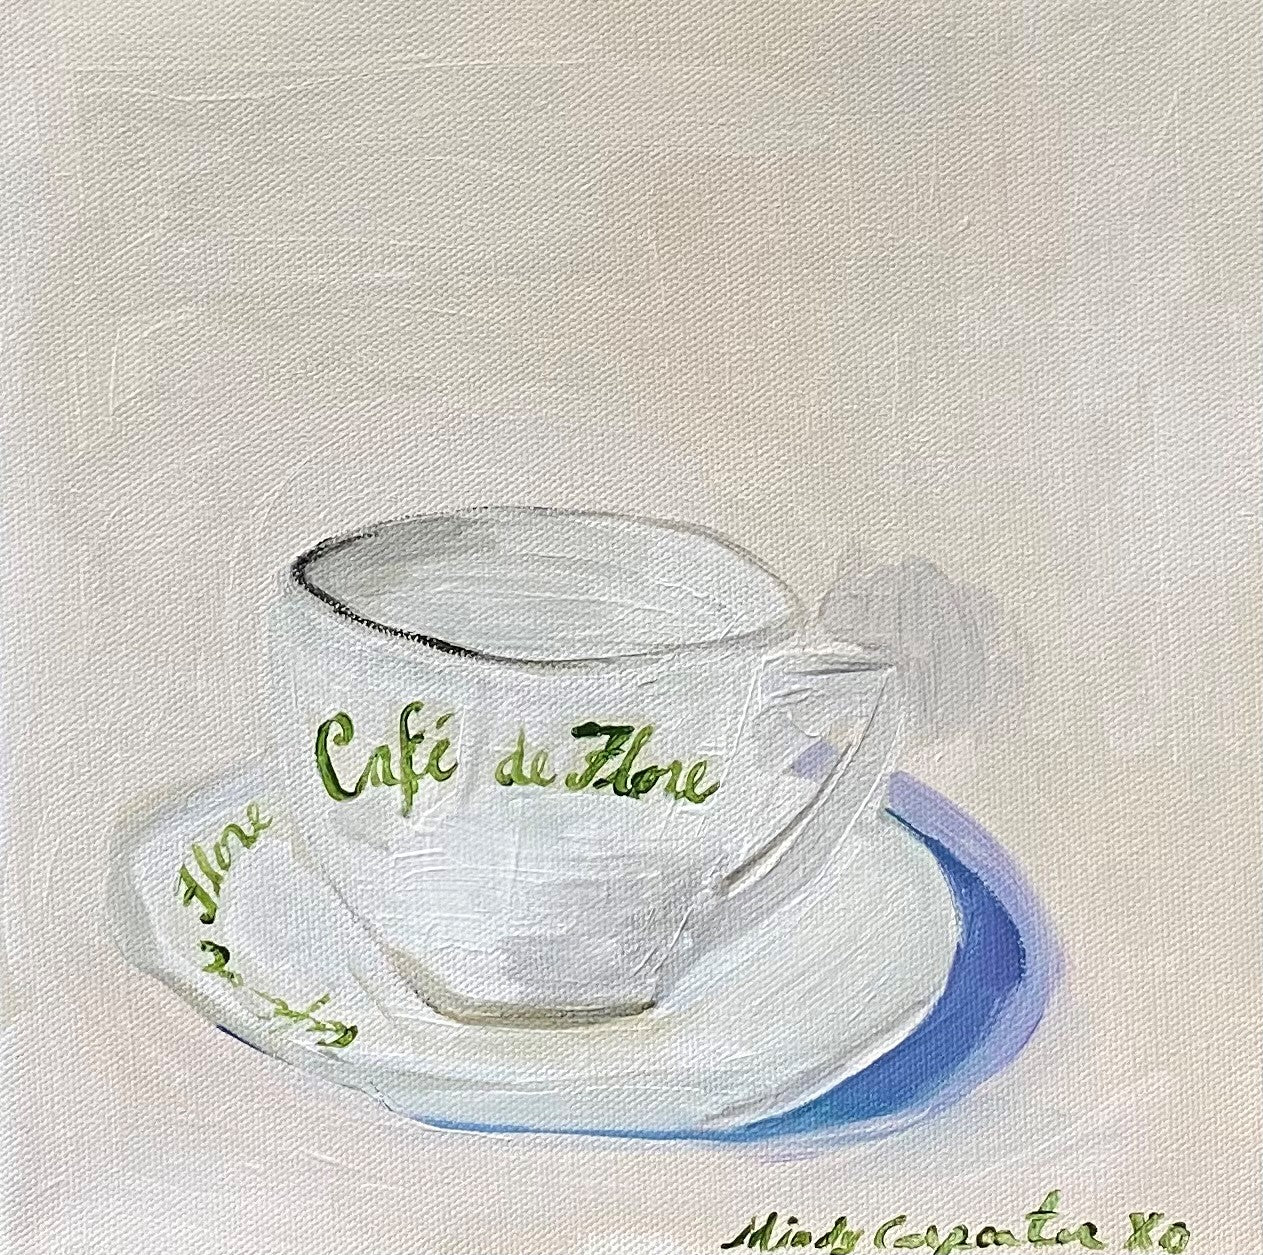 Cafe de Flore Cup by Mindy Carpenter